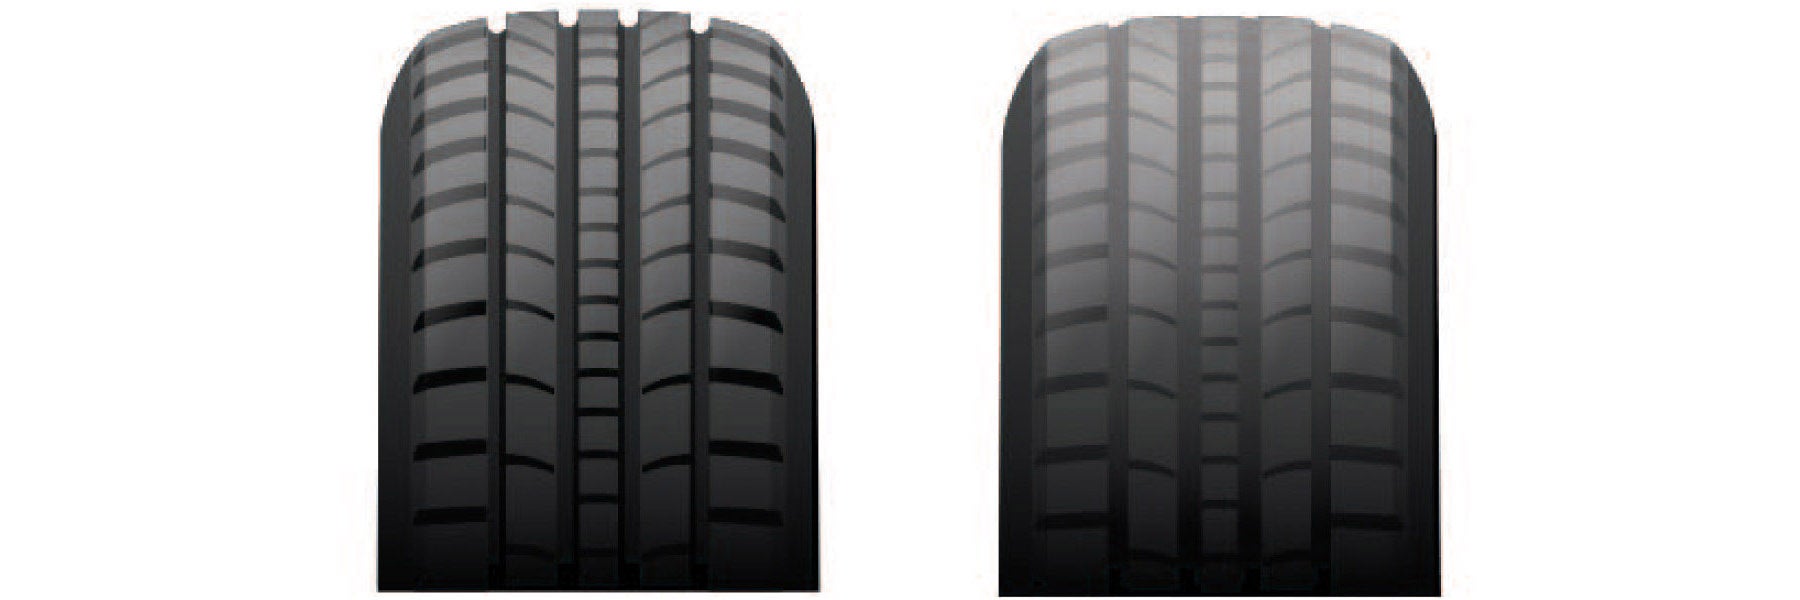 Tire tread depth comparison at Savage Kia in Reading PA